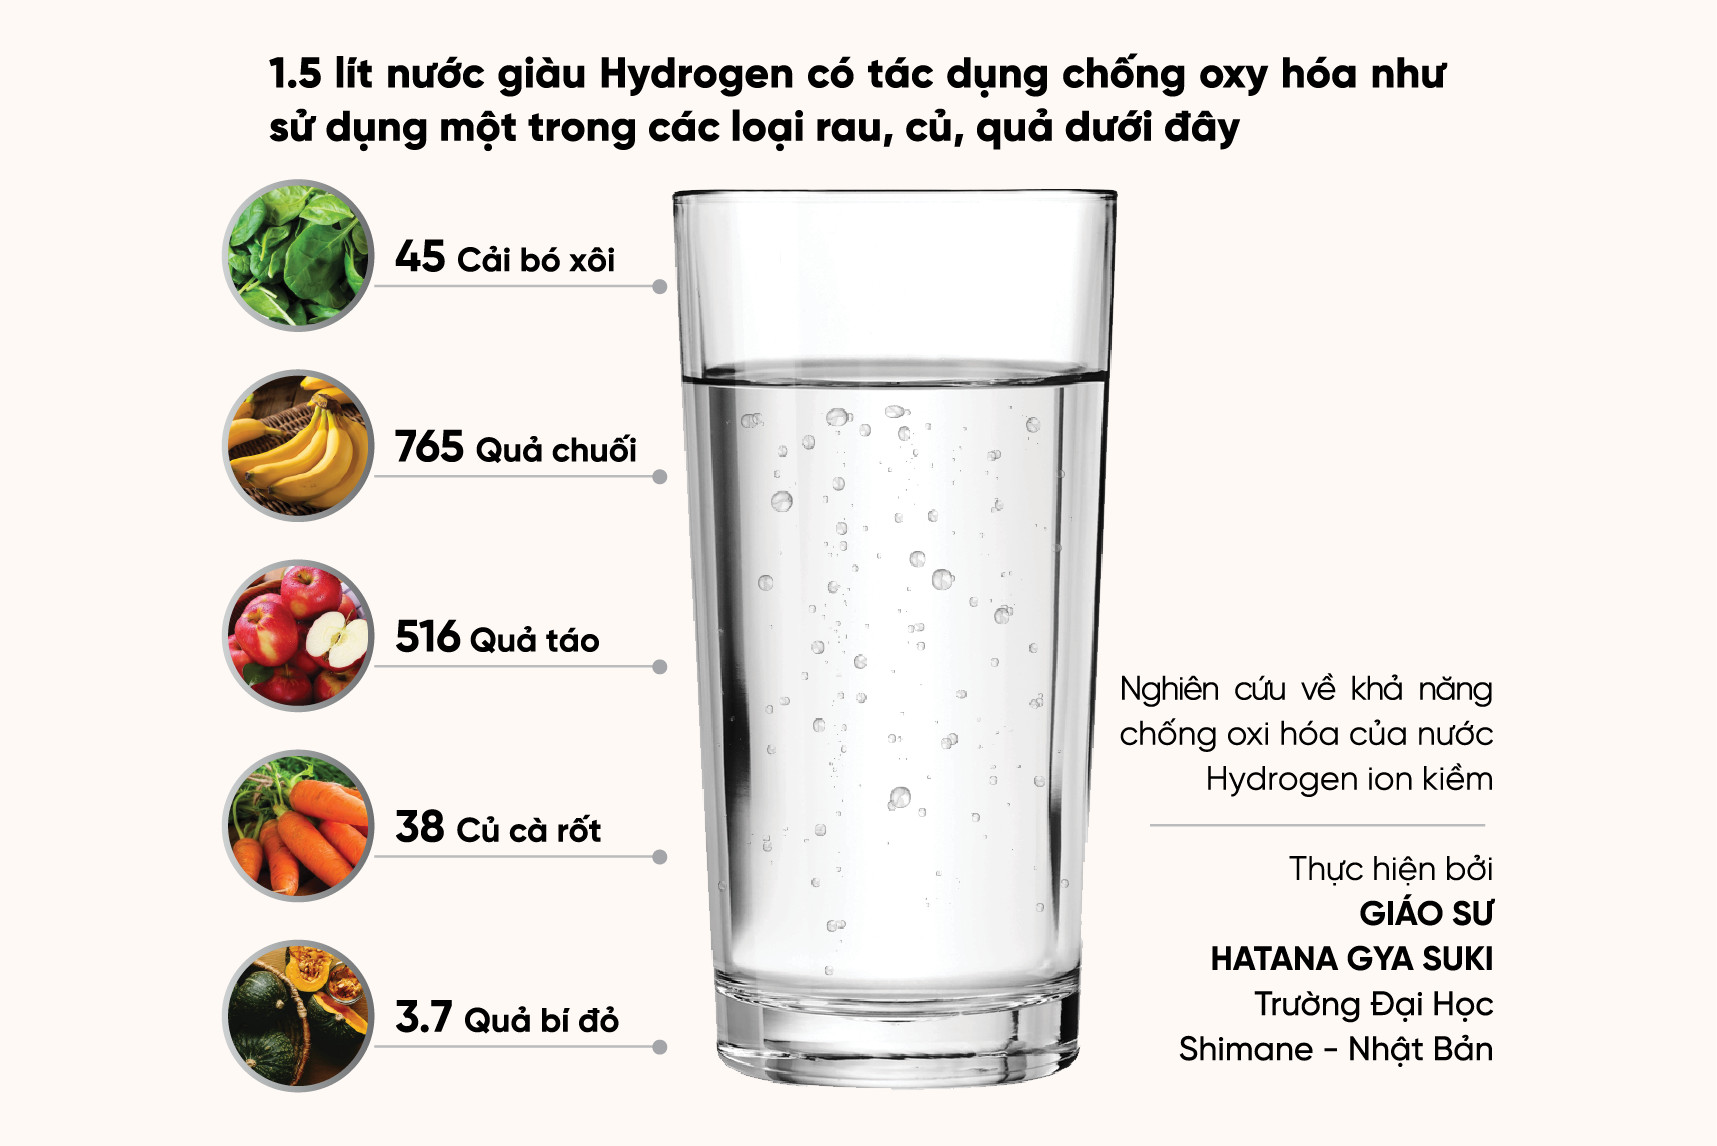 Nước hydrogen hỗ trợ chống oxy hoá, ngăn ngừa lão hoá.